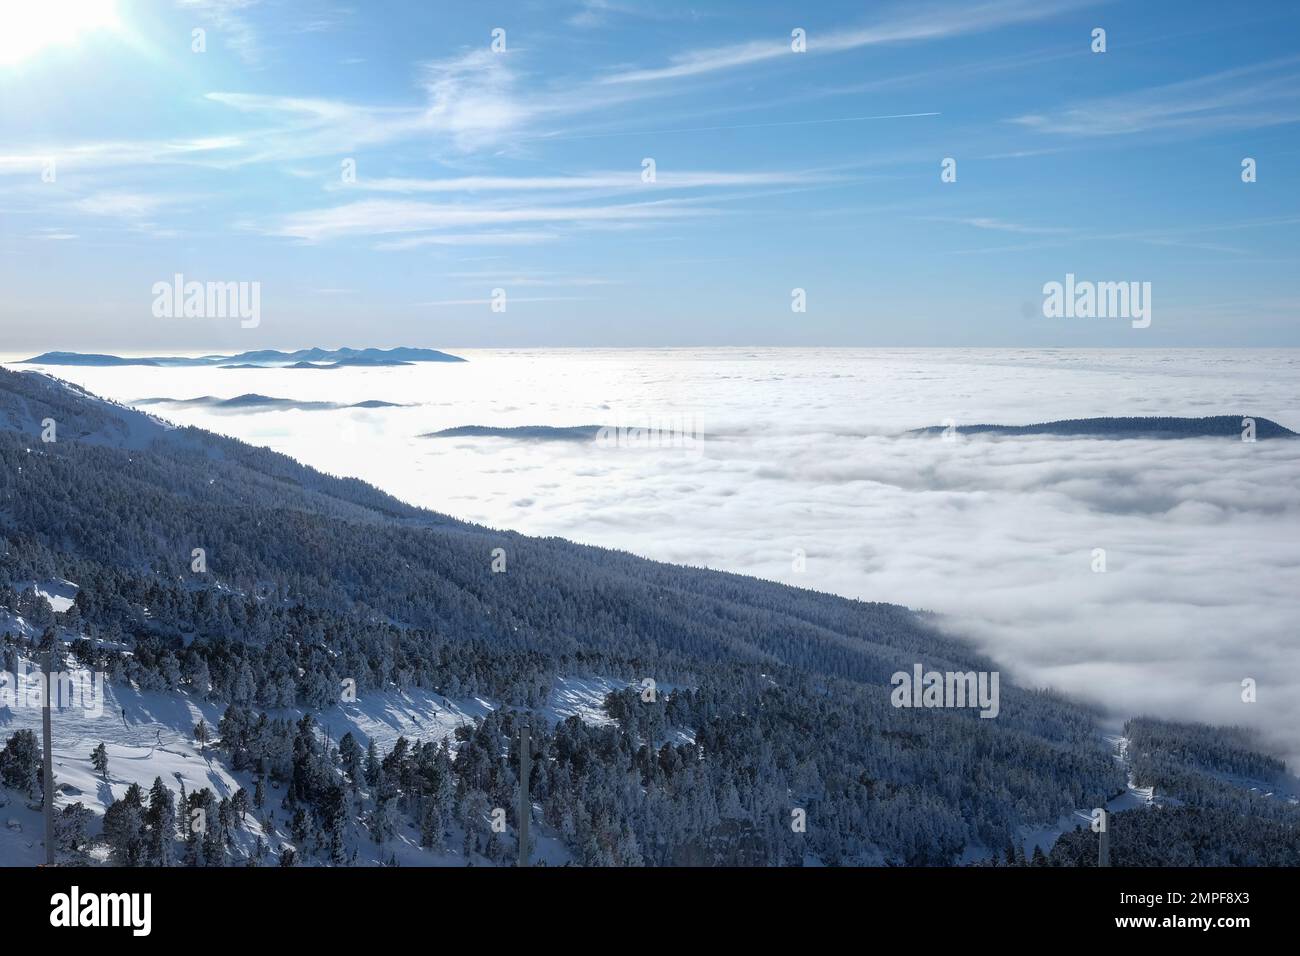 Michael Bunel / Le Pictorium -  Skiing in the Alps -  8/1/2016  -  Savoie / France / La plagne  -  sea of clouds in winter. 29 January 2023. La plagne Stock Photo